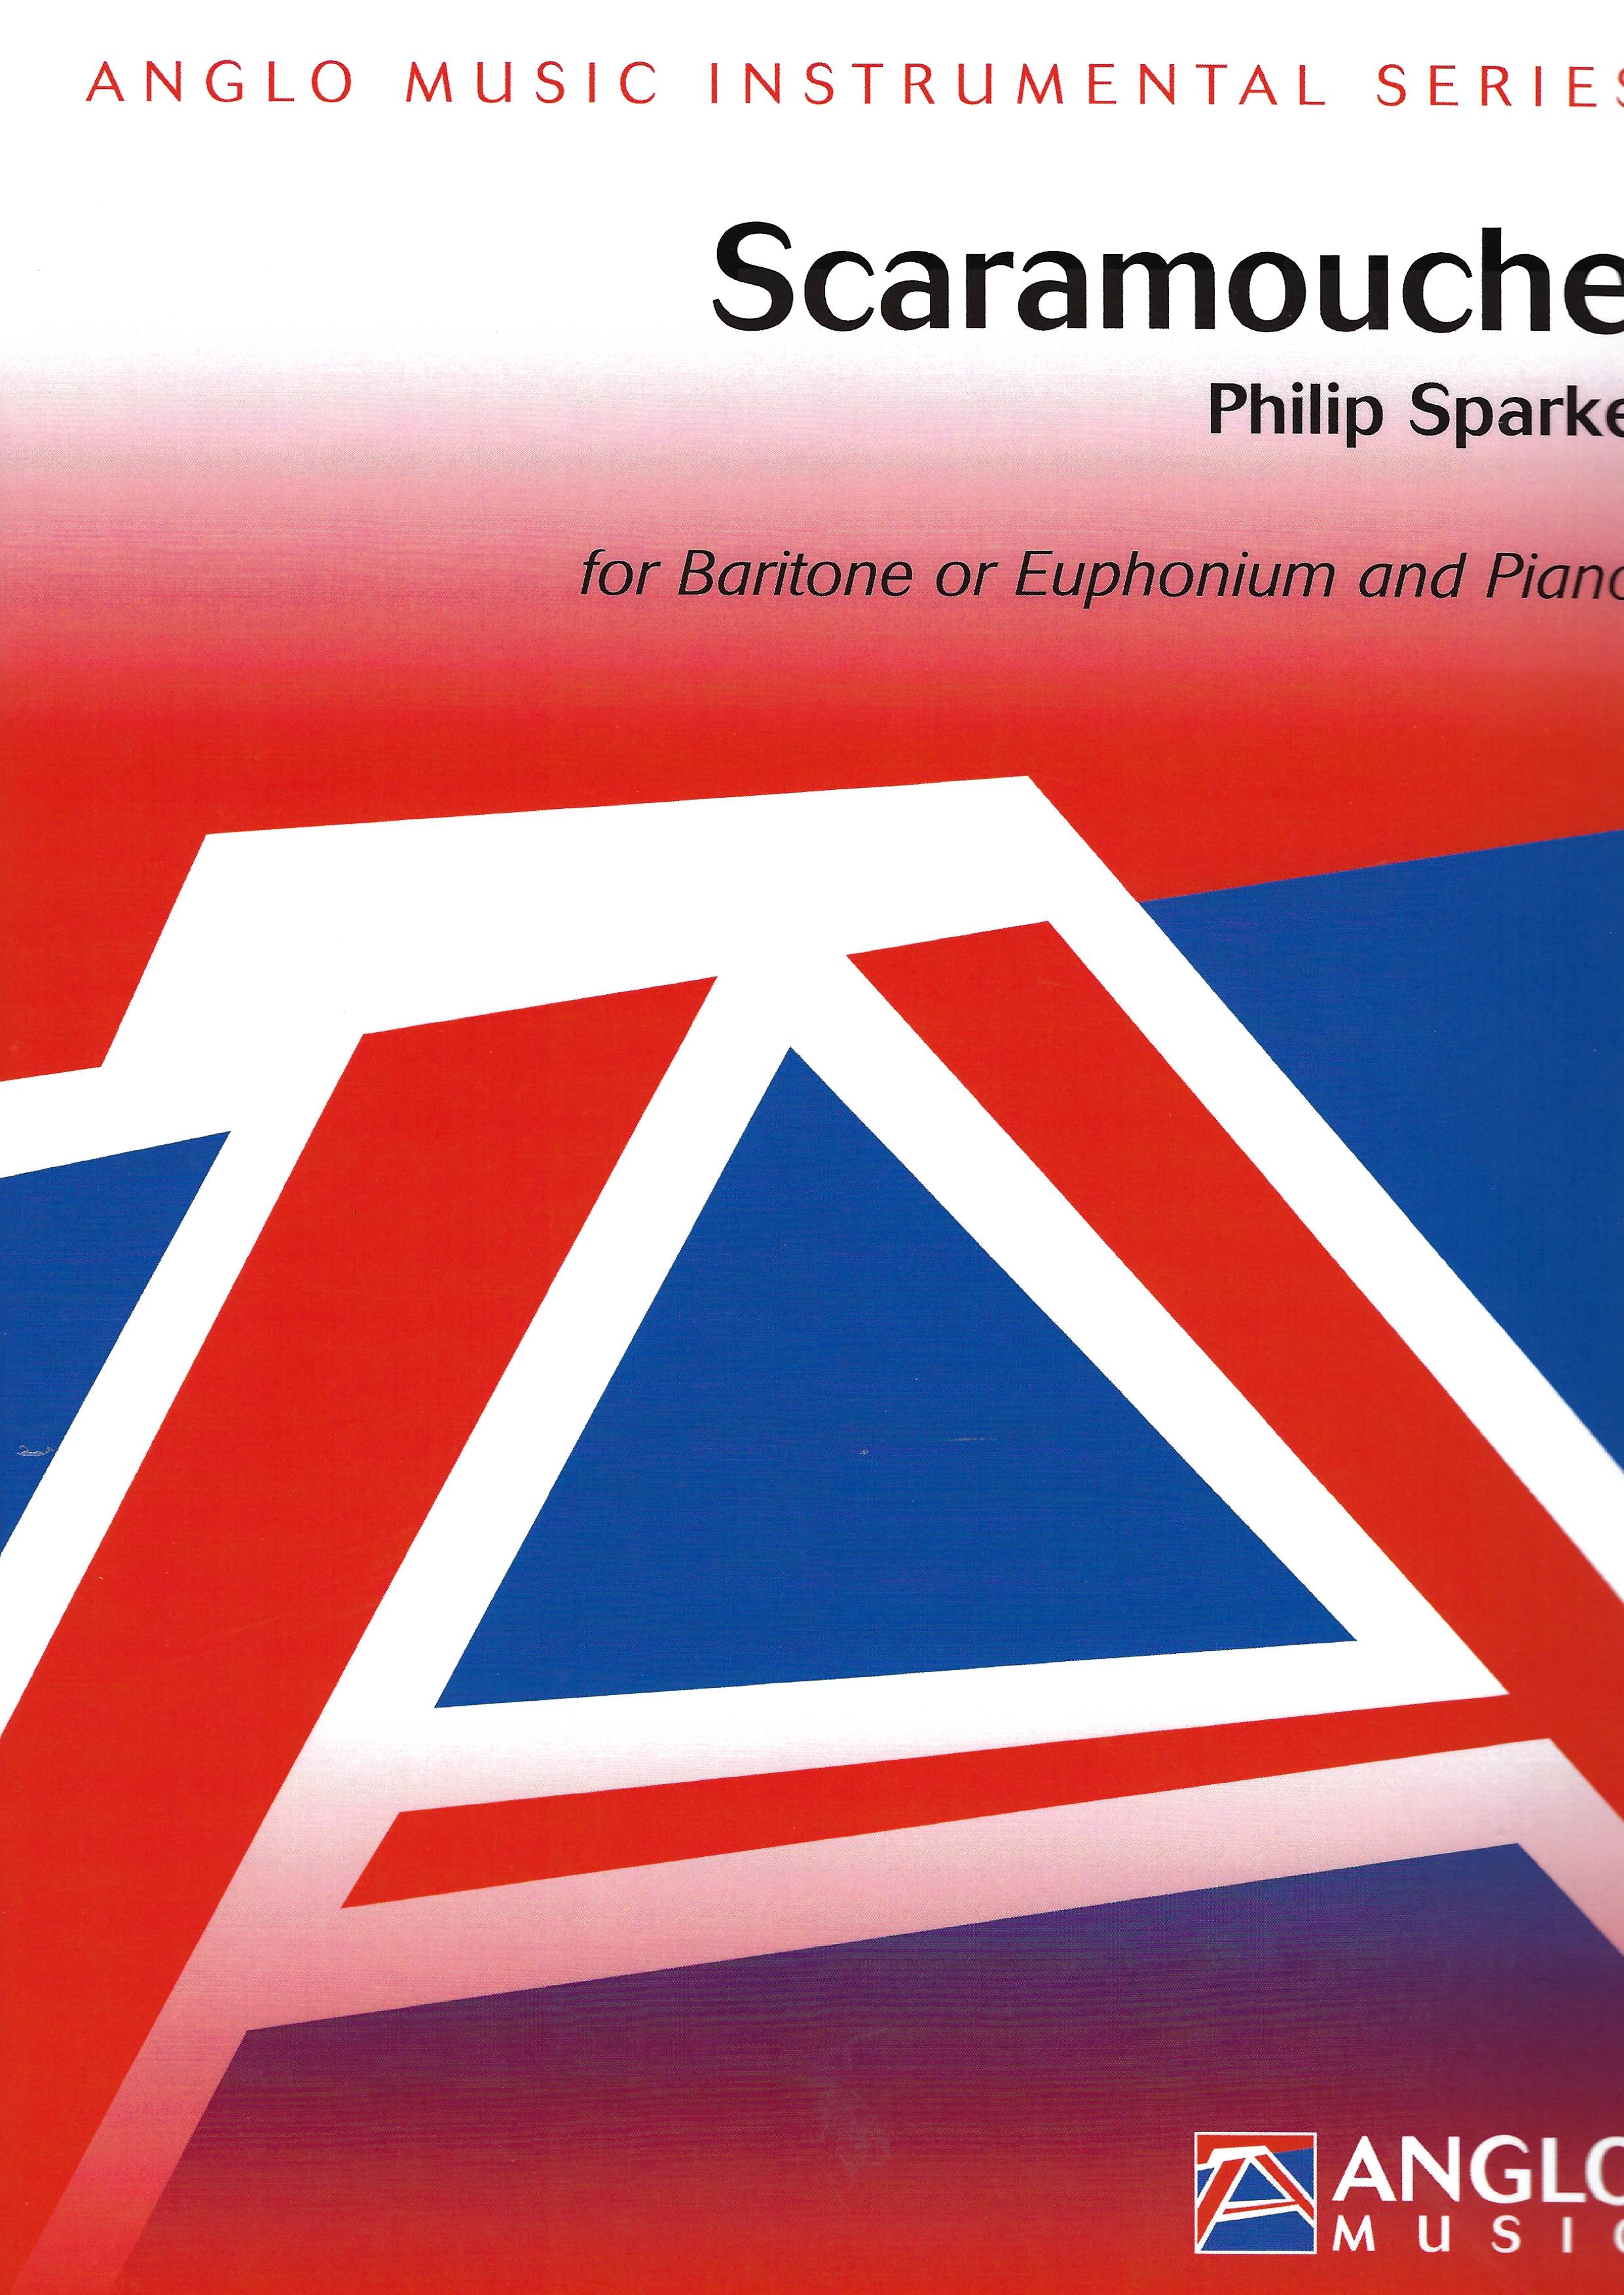 Scaramouche - Philip Sparke - Baritone or Euphonium and Piano 